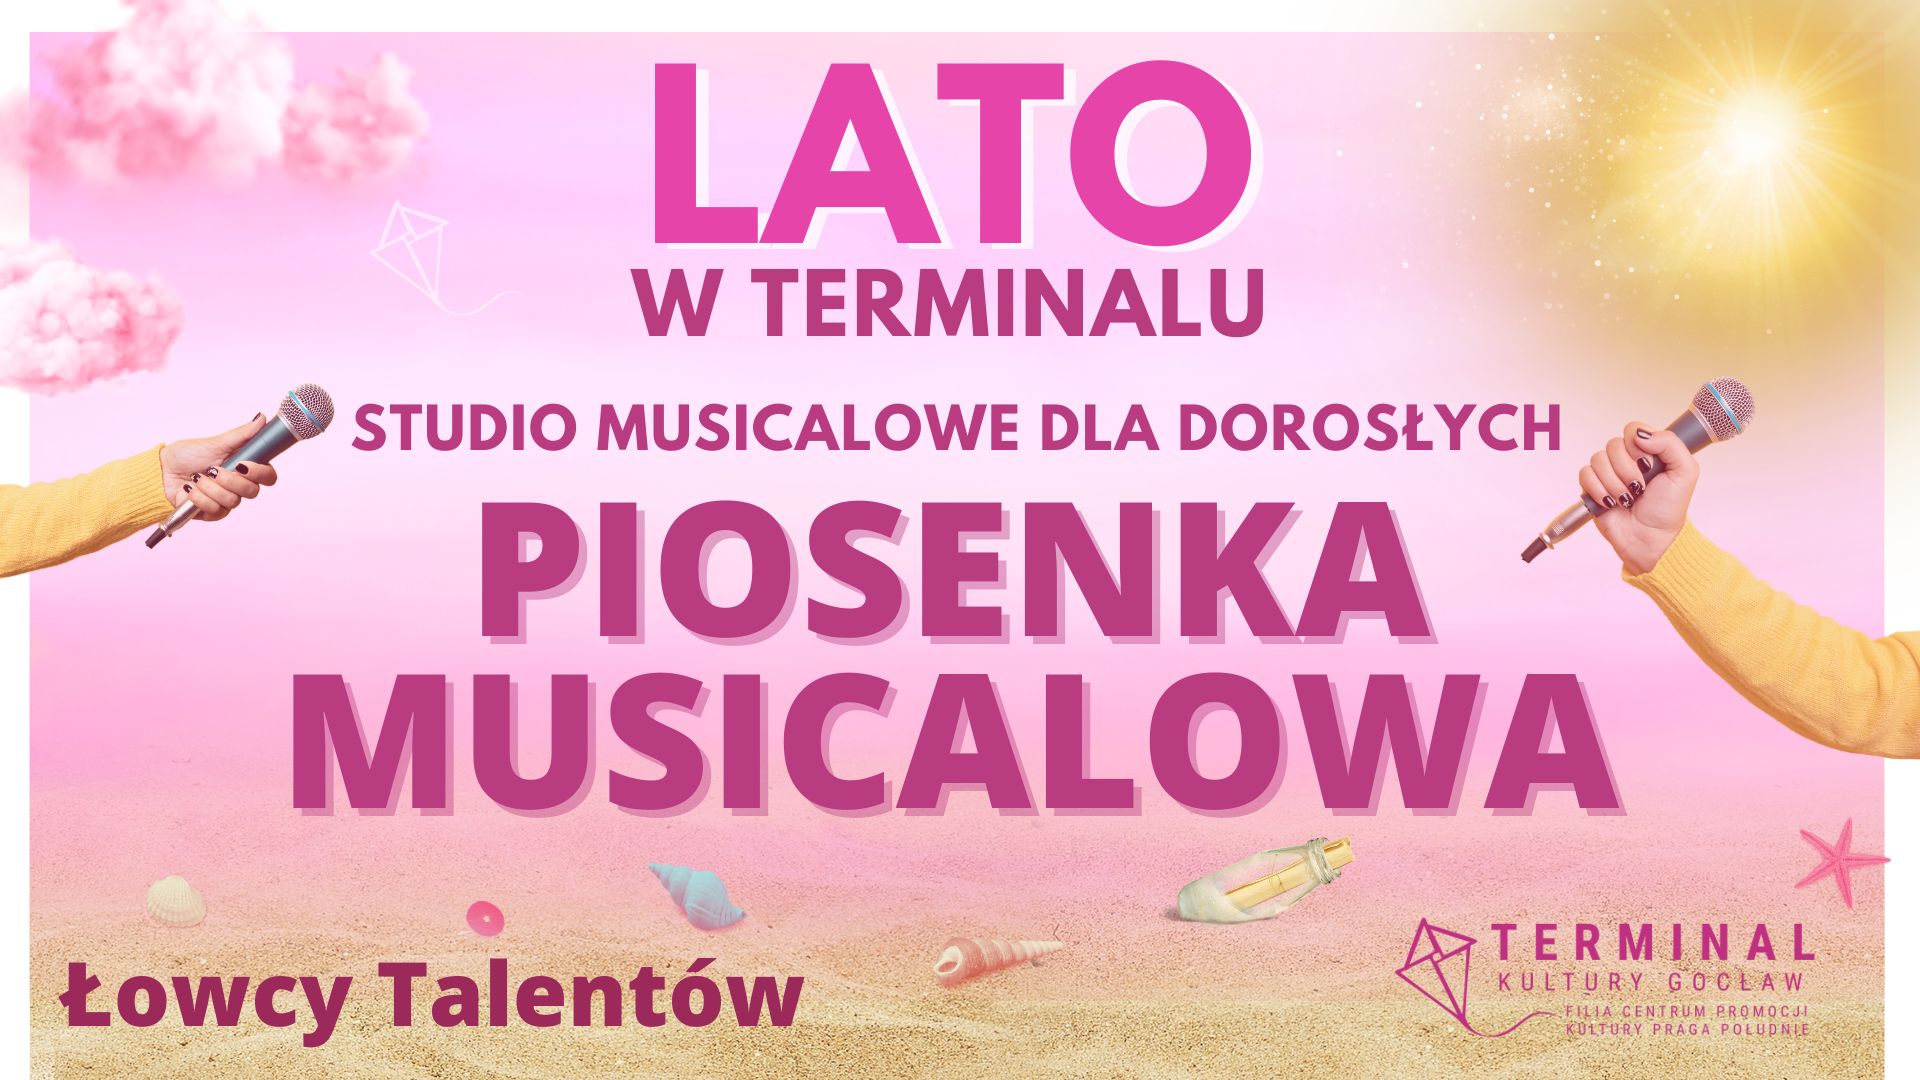 LATO - STUDIO MUSICALOWE DLA DOROSŁYCH – PIOSENKA MUSICALOWA Łowcy Talentów